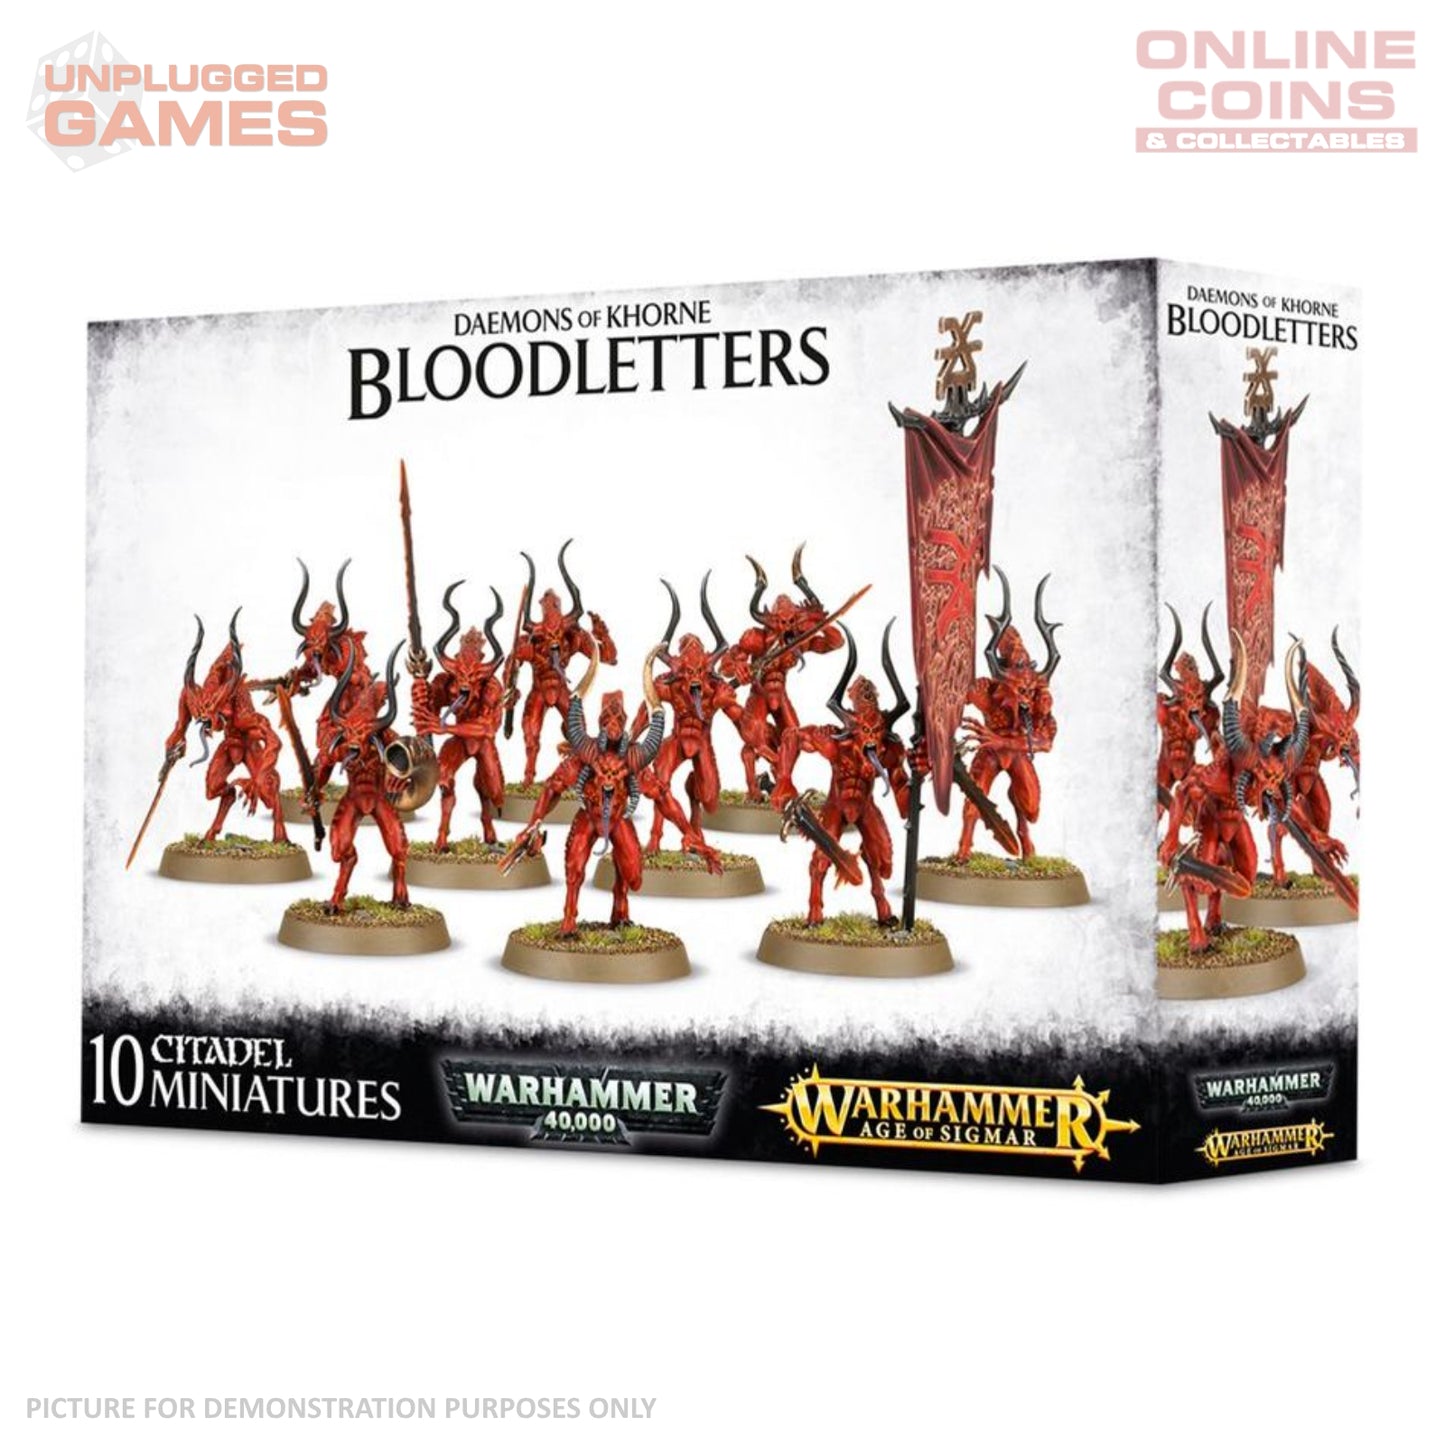 Warhammer Age of Sigmar - Daemons of Khorne Bloodletters